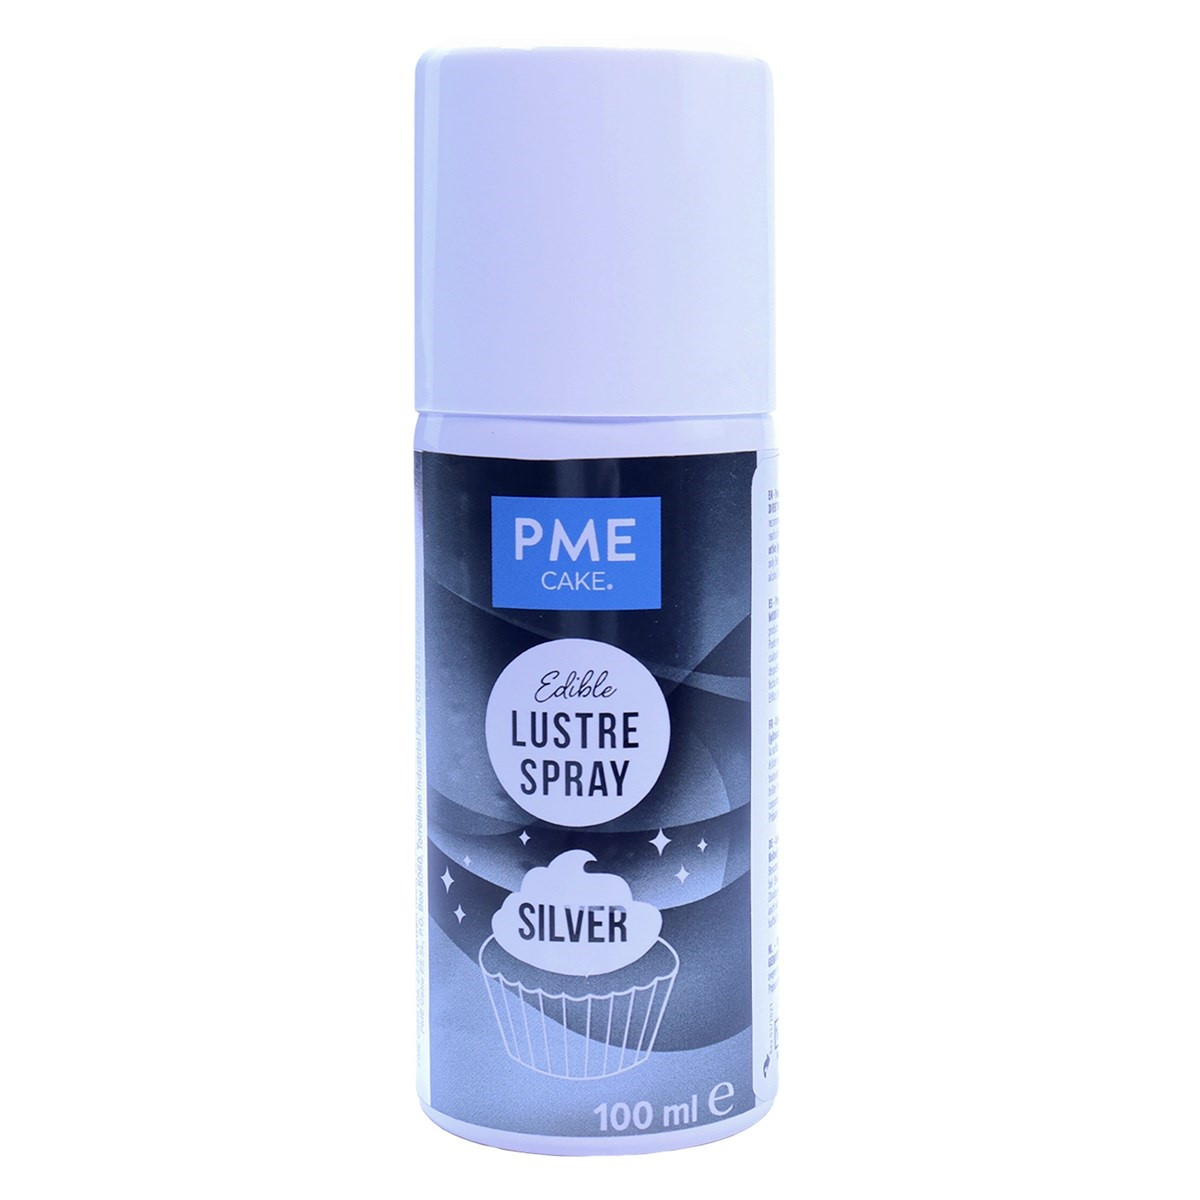 Colour spray PME Lustre Spray Silver 100ml